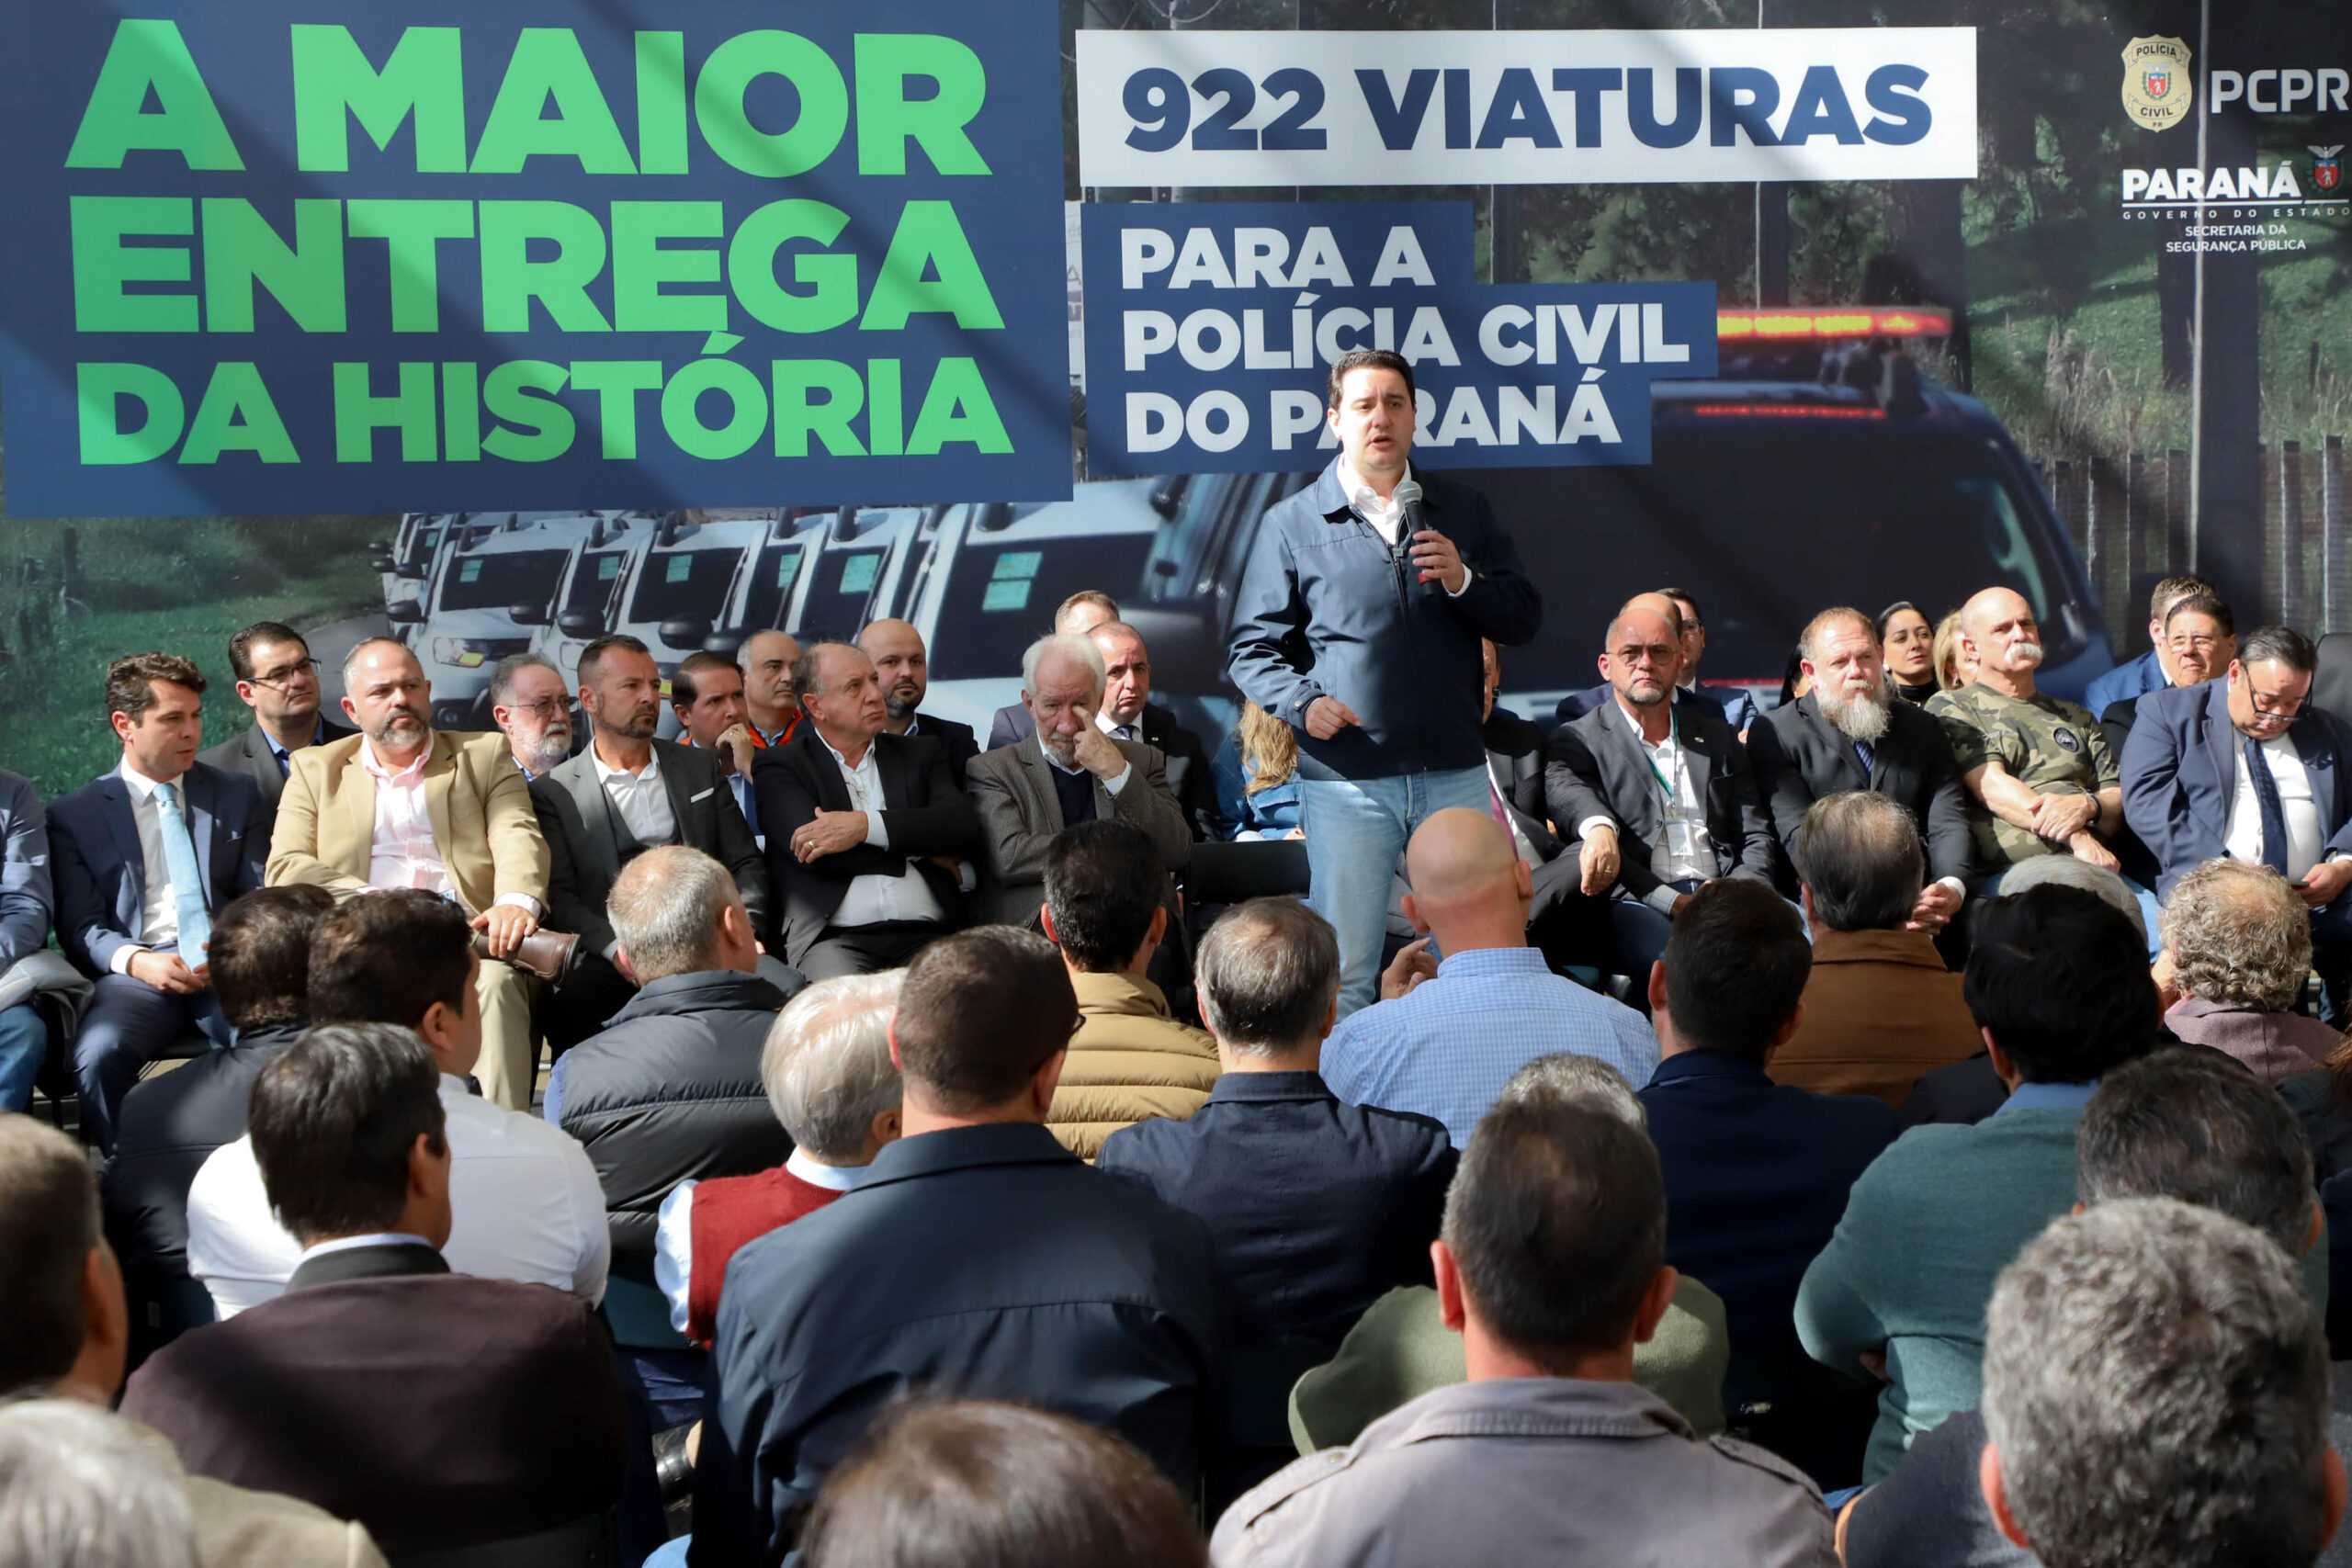 Jornal Ilustrado - Com 922 novas viaturas, Polícia Civil do Paraná terá maior renovação de frota da história